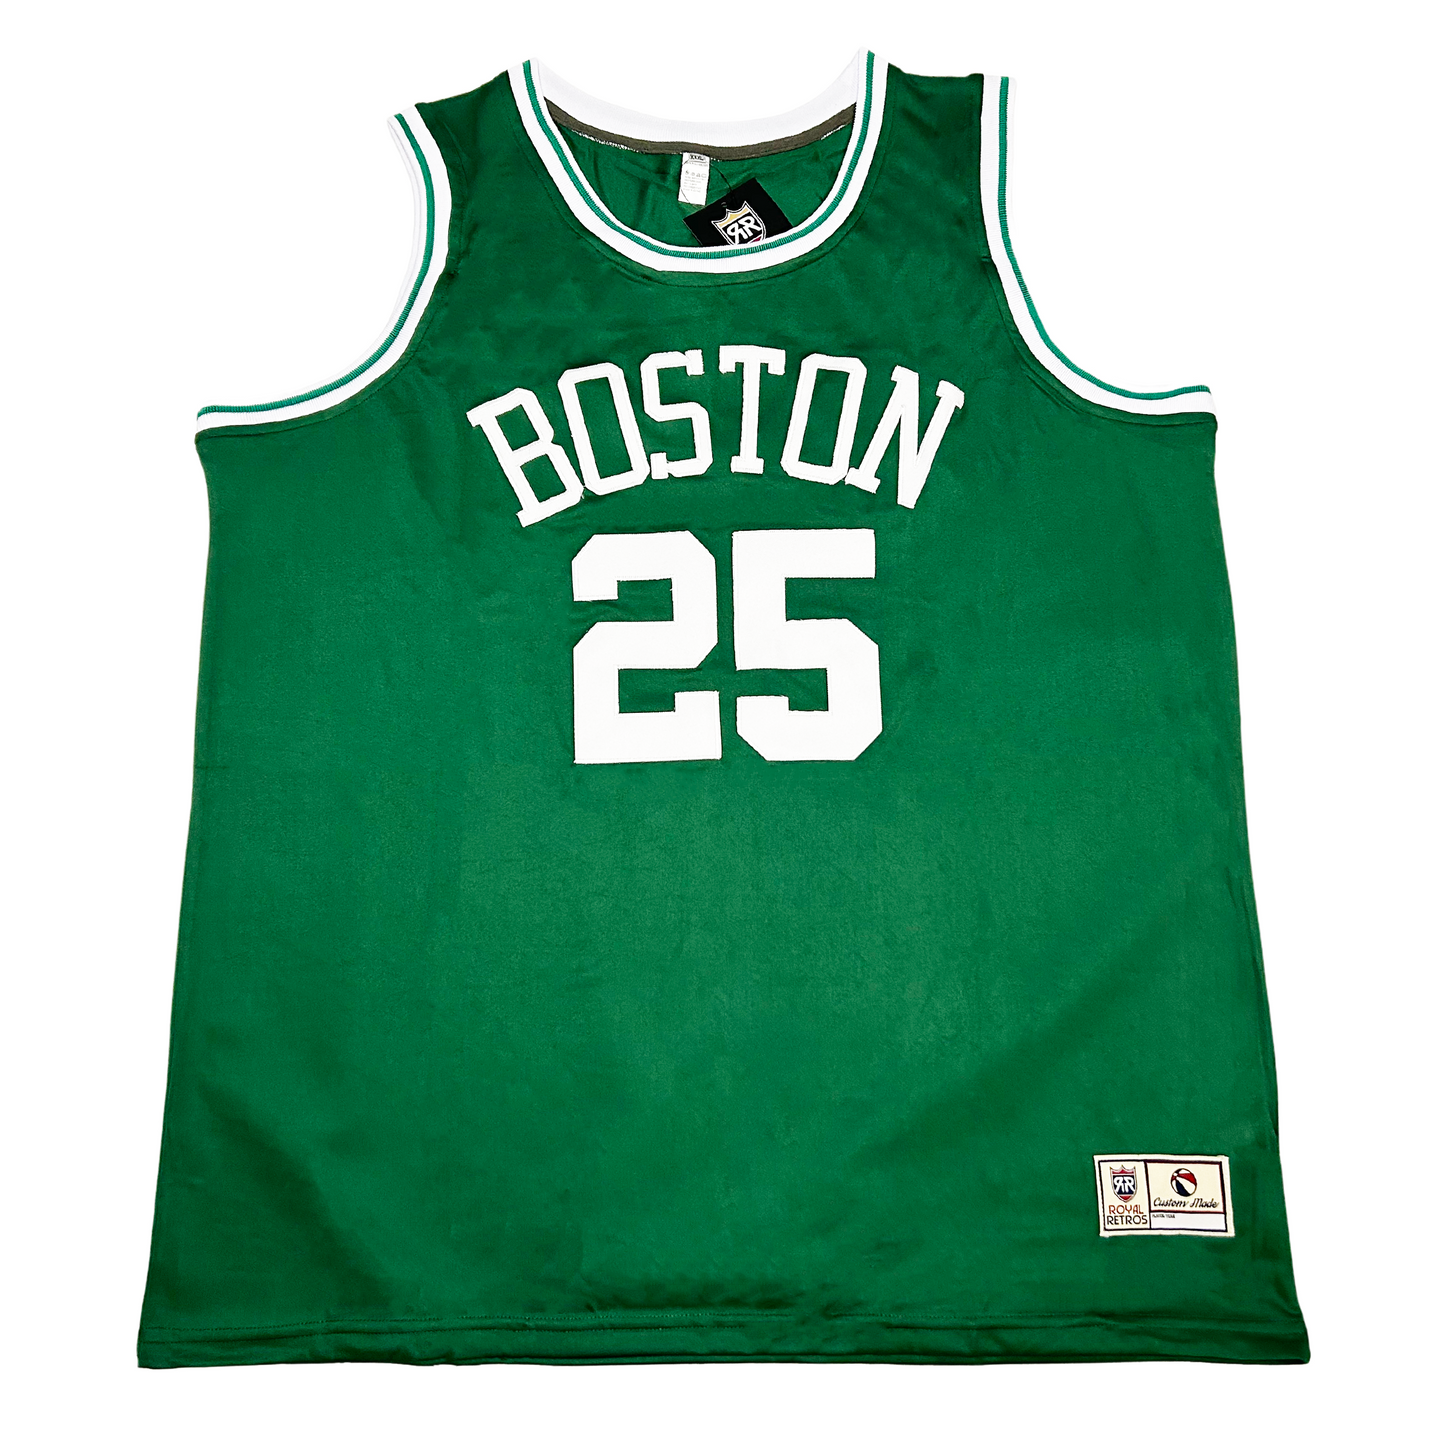 Boston Basketball Jersey